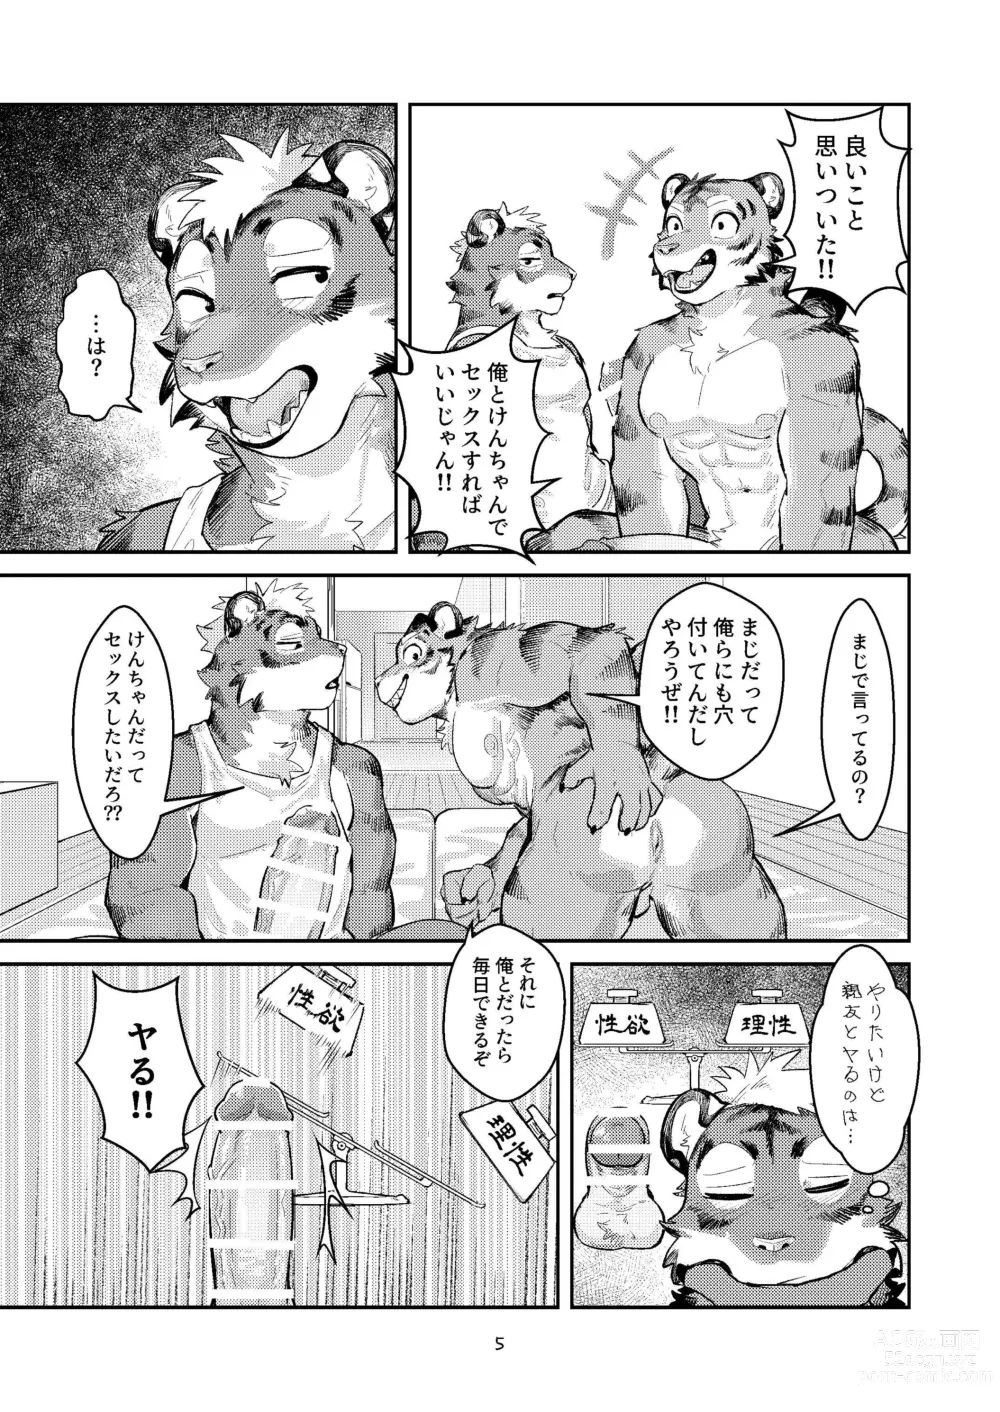 Page 5 of doujinshi Hajimete wa Tora no Ana de!